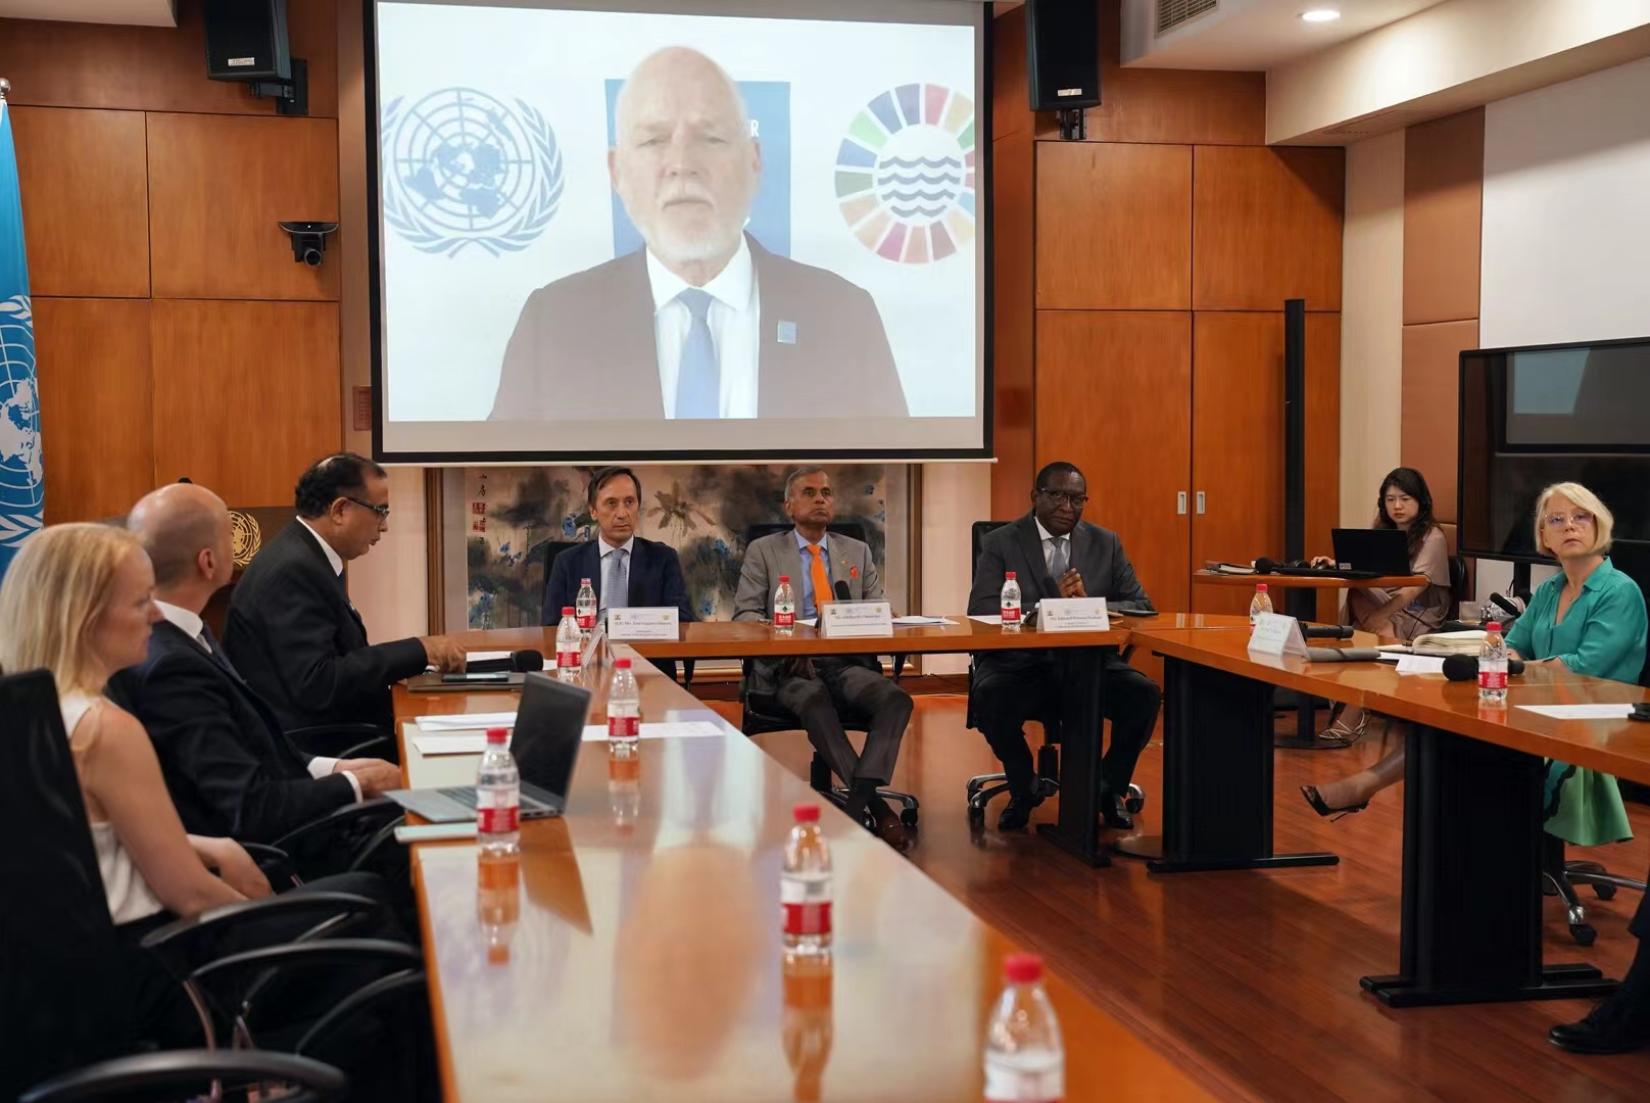 联合国秘书长海洋事务特使彼得·汤姆森在“北京蓝色对话”活动会场